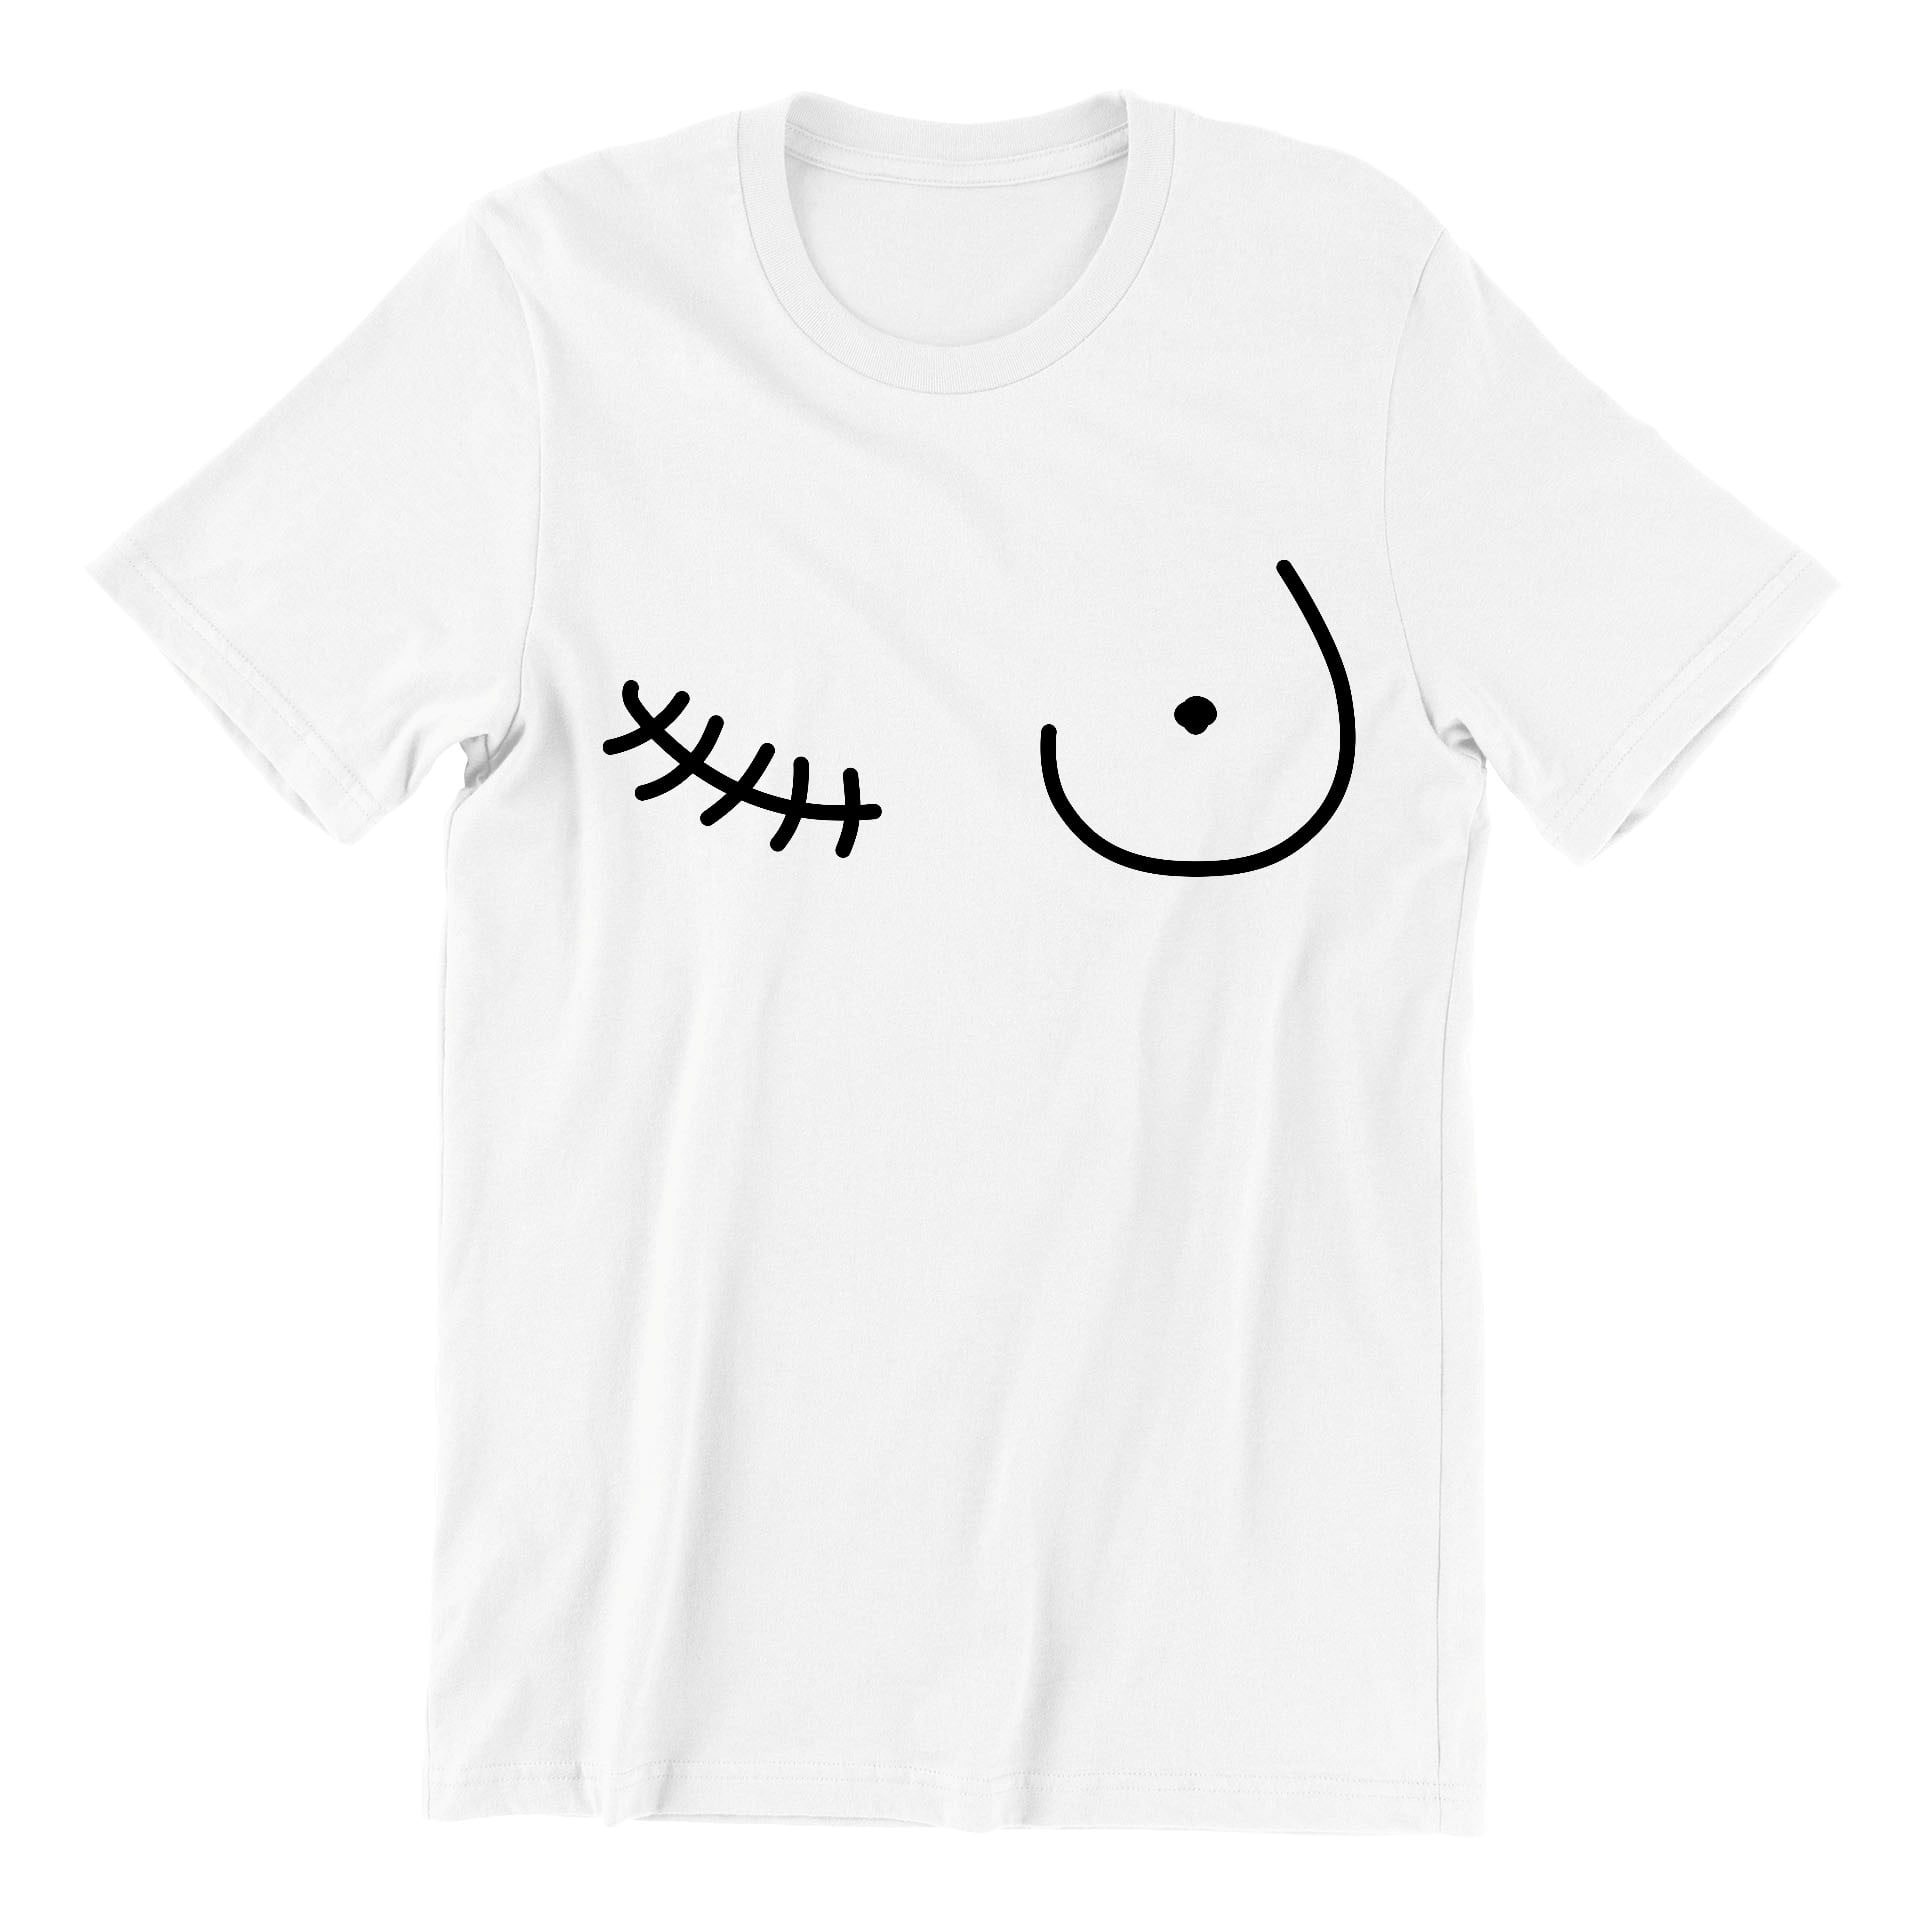 Breast Cancer Support Mastectomy Scar Survivor Unisex Men's T-shirt, XL,  White